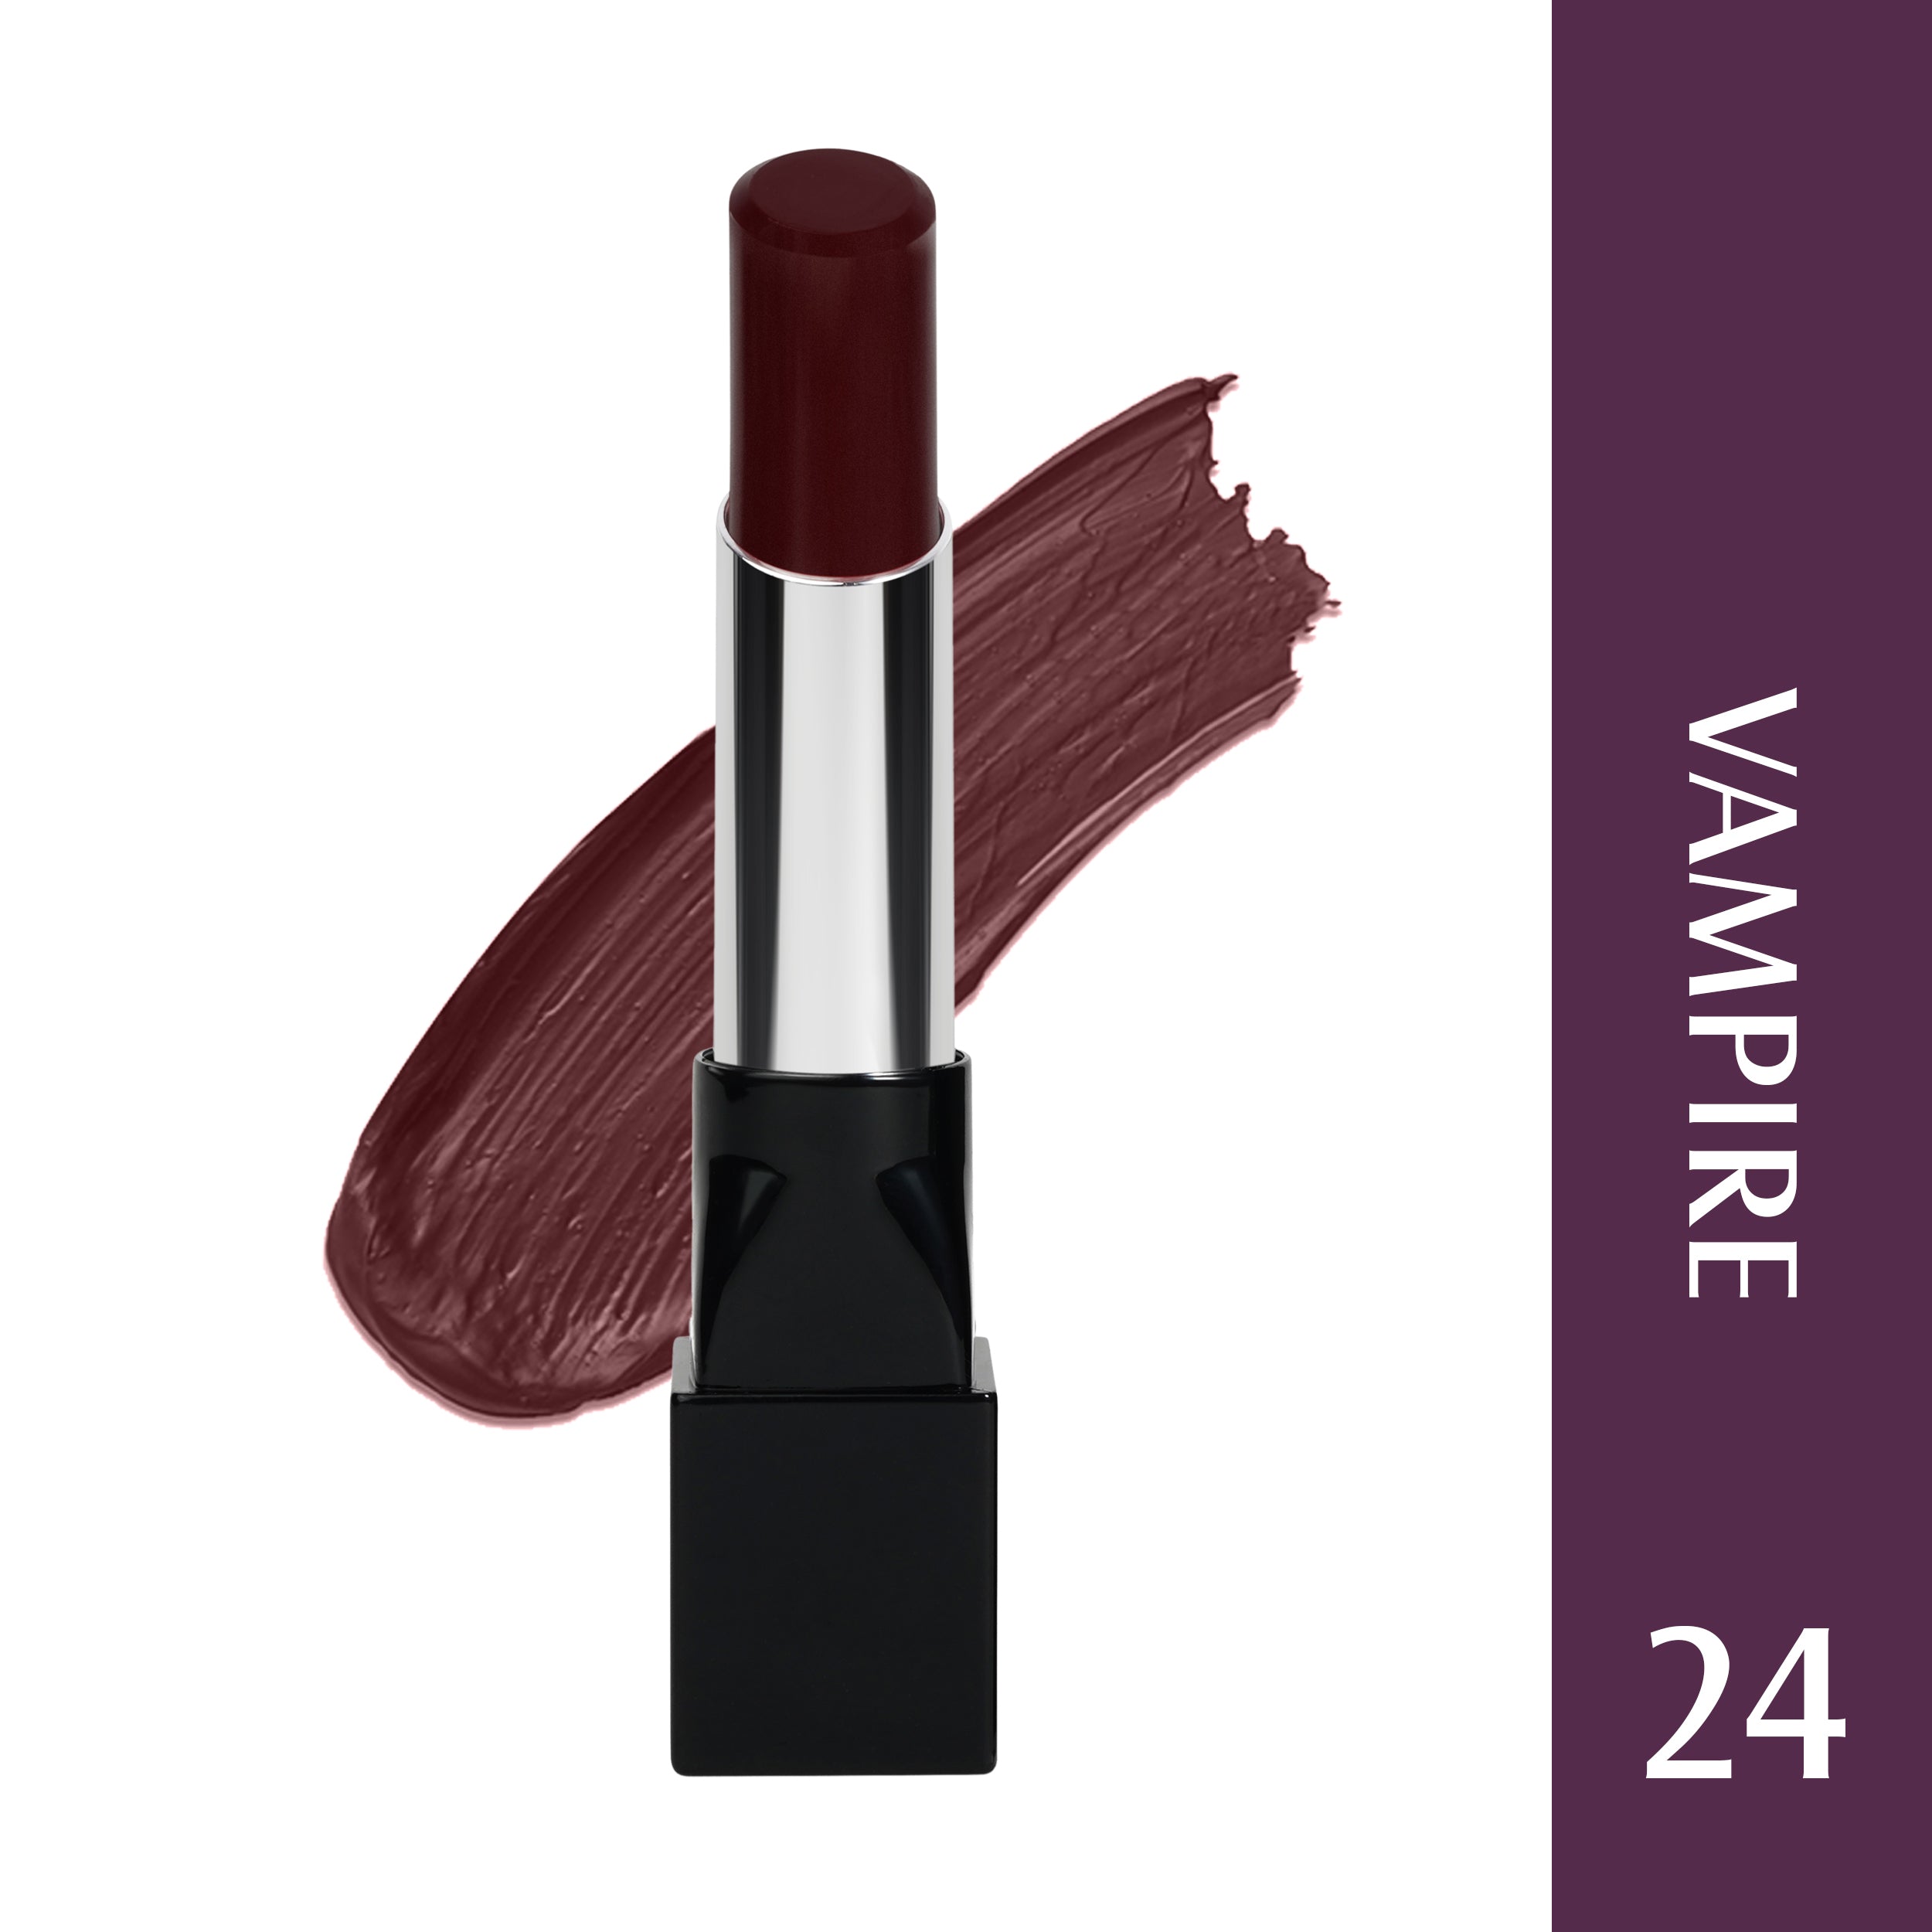 Glam21 Ultra Velvet Lipstick  Long-lasting stay on lips Lovely matte finish, 2.5gm Vampire-24